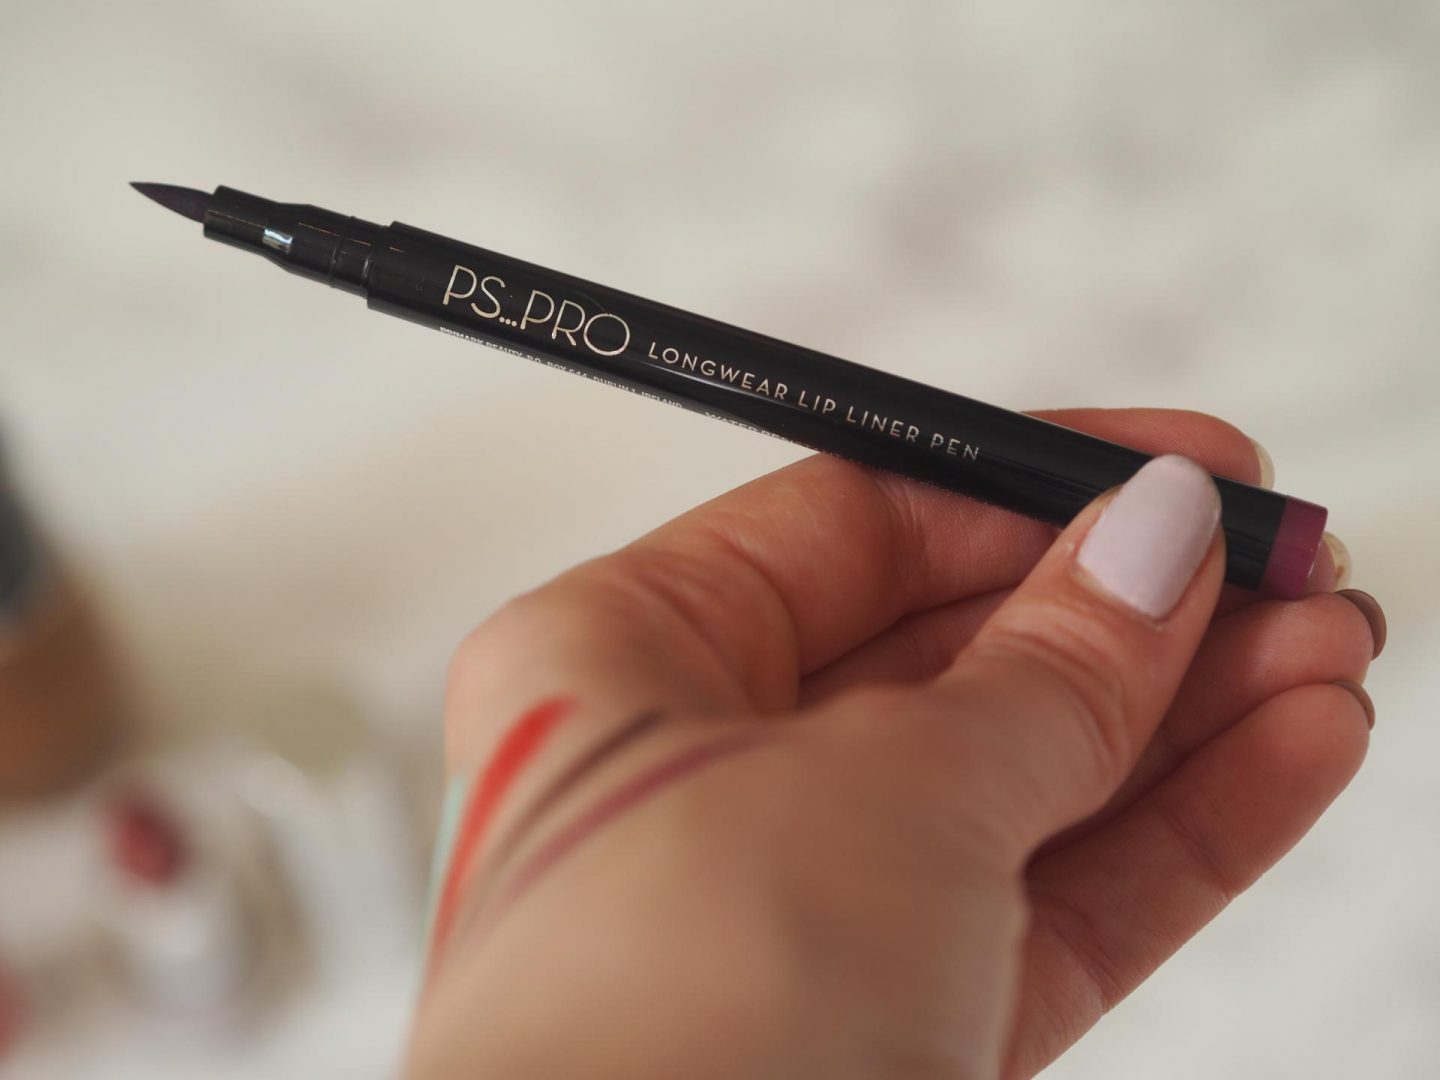 Primark PS Pro - Products: Longwear Lip Liner Pen